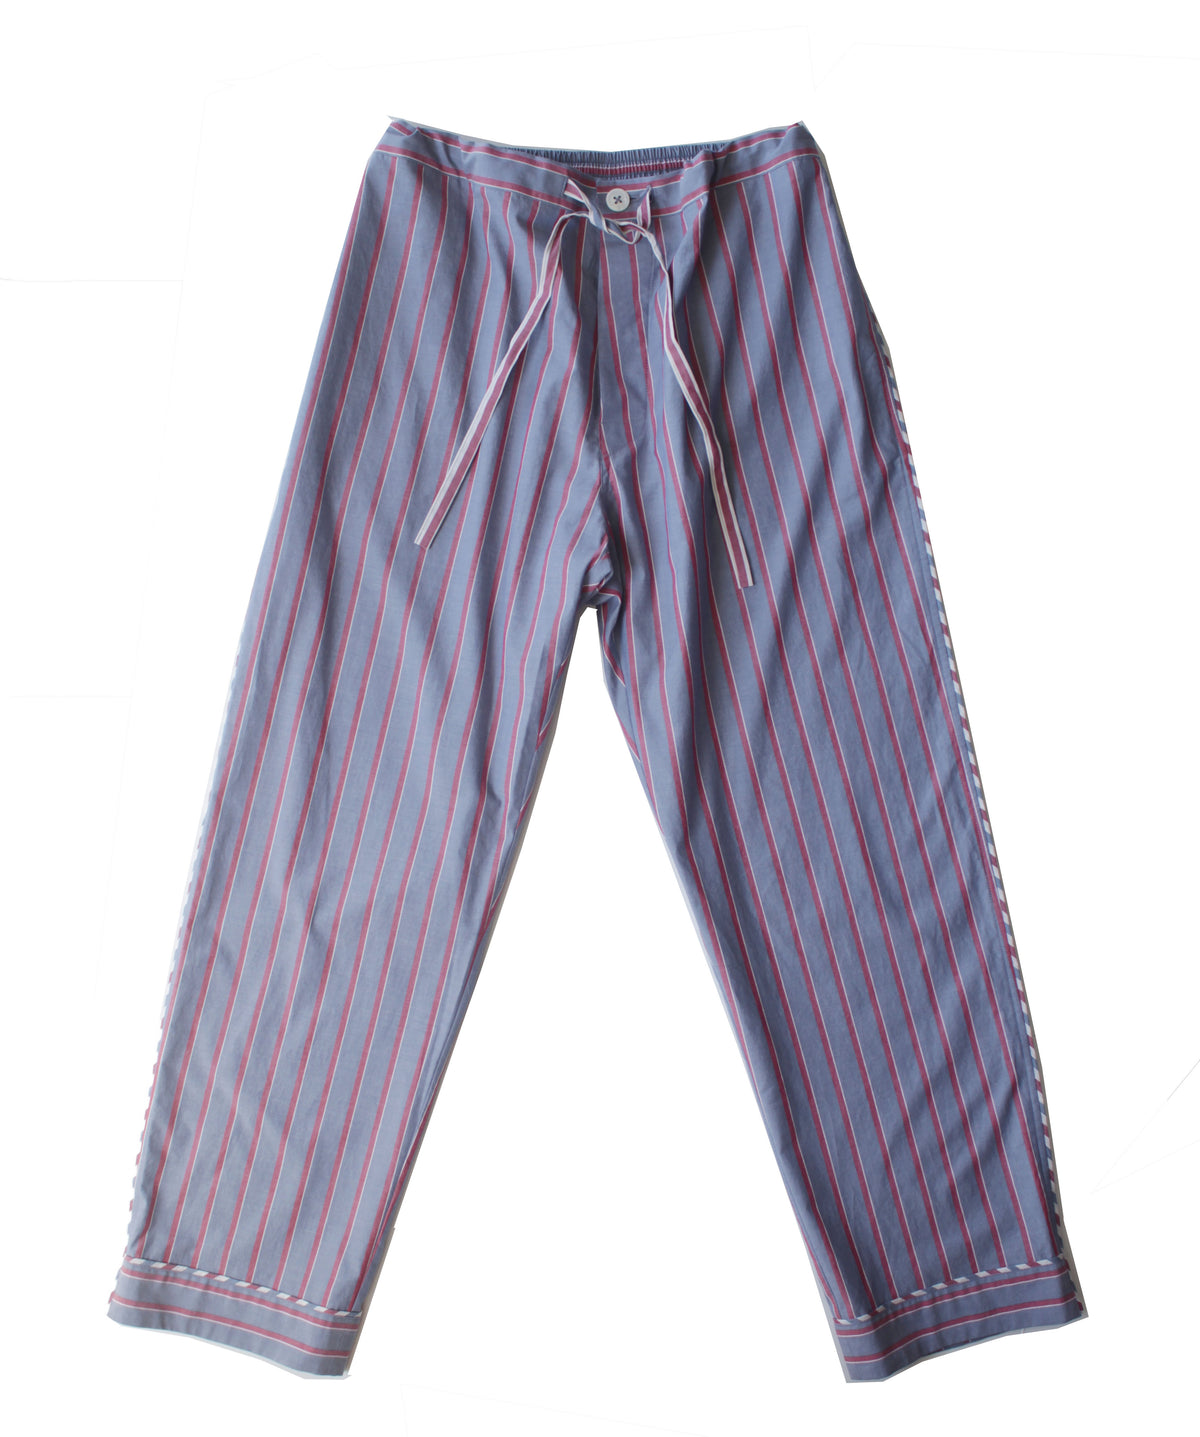 Saturn Men's Pajama Pant in Grey Red Stripe